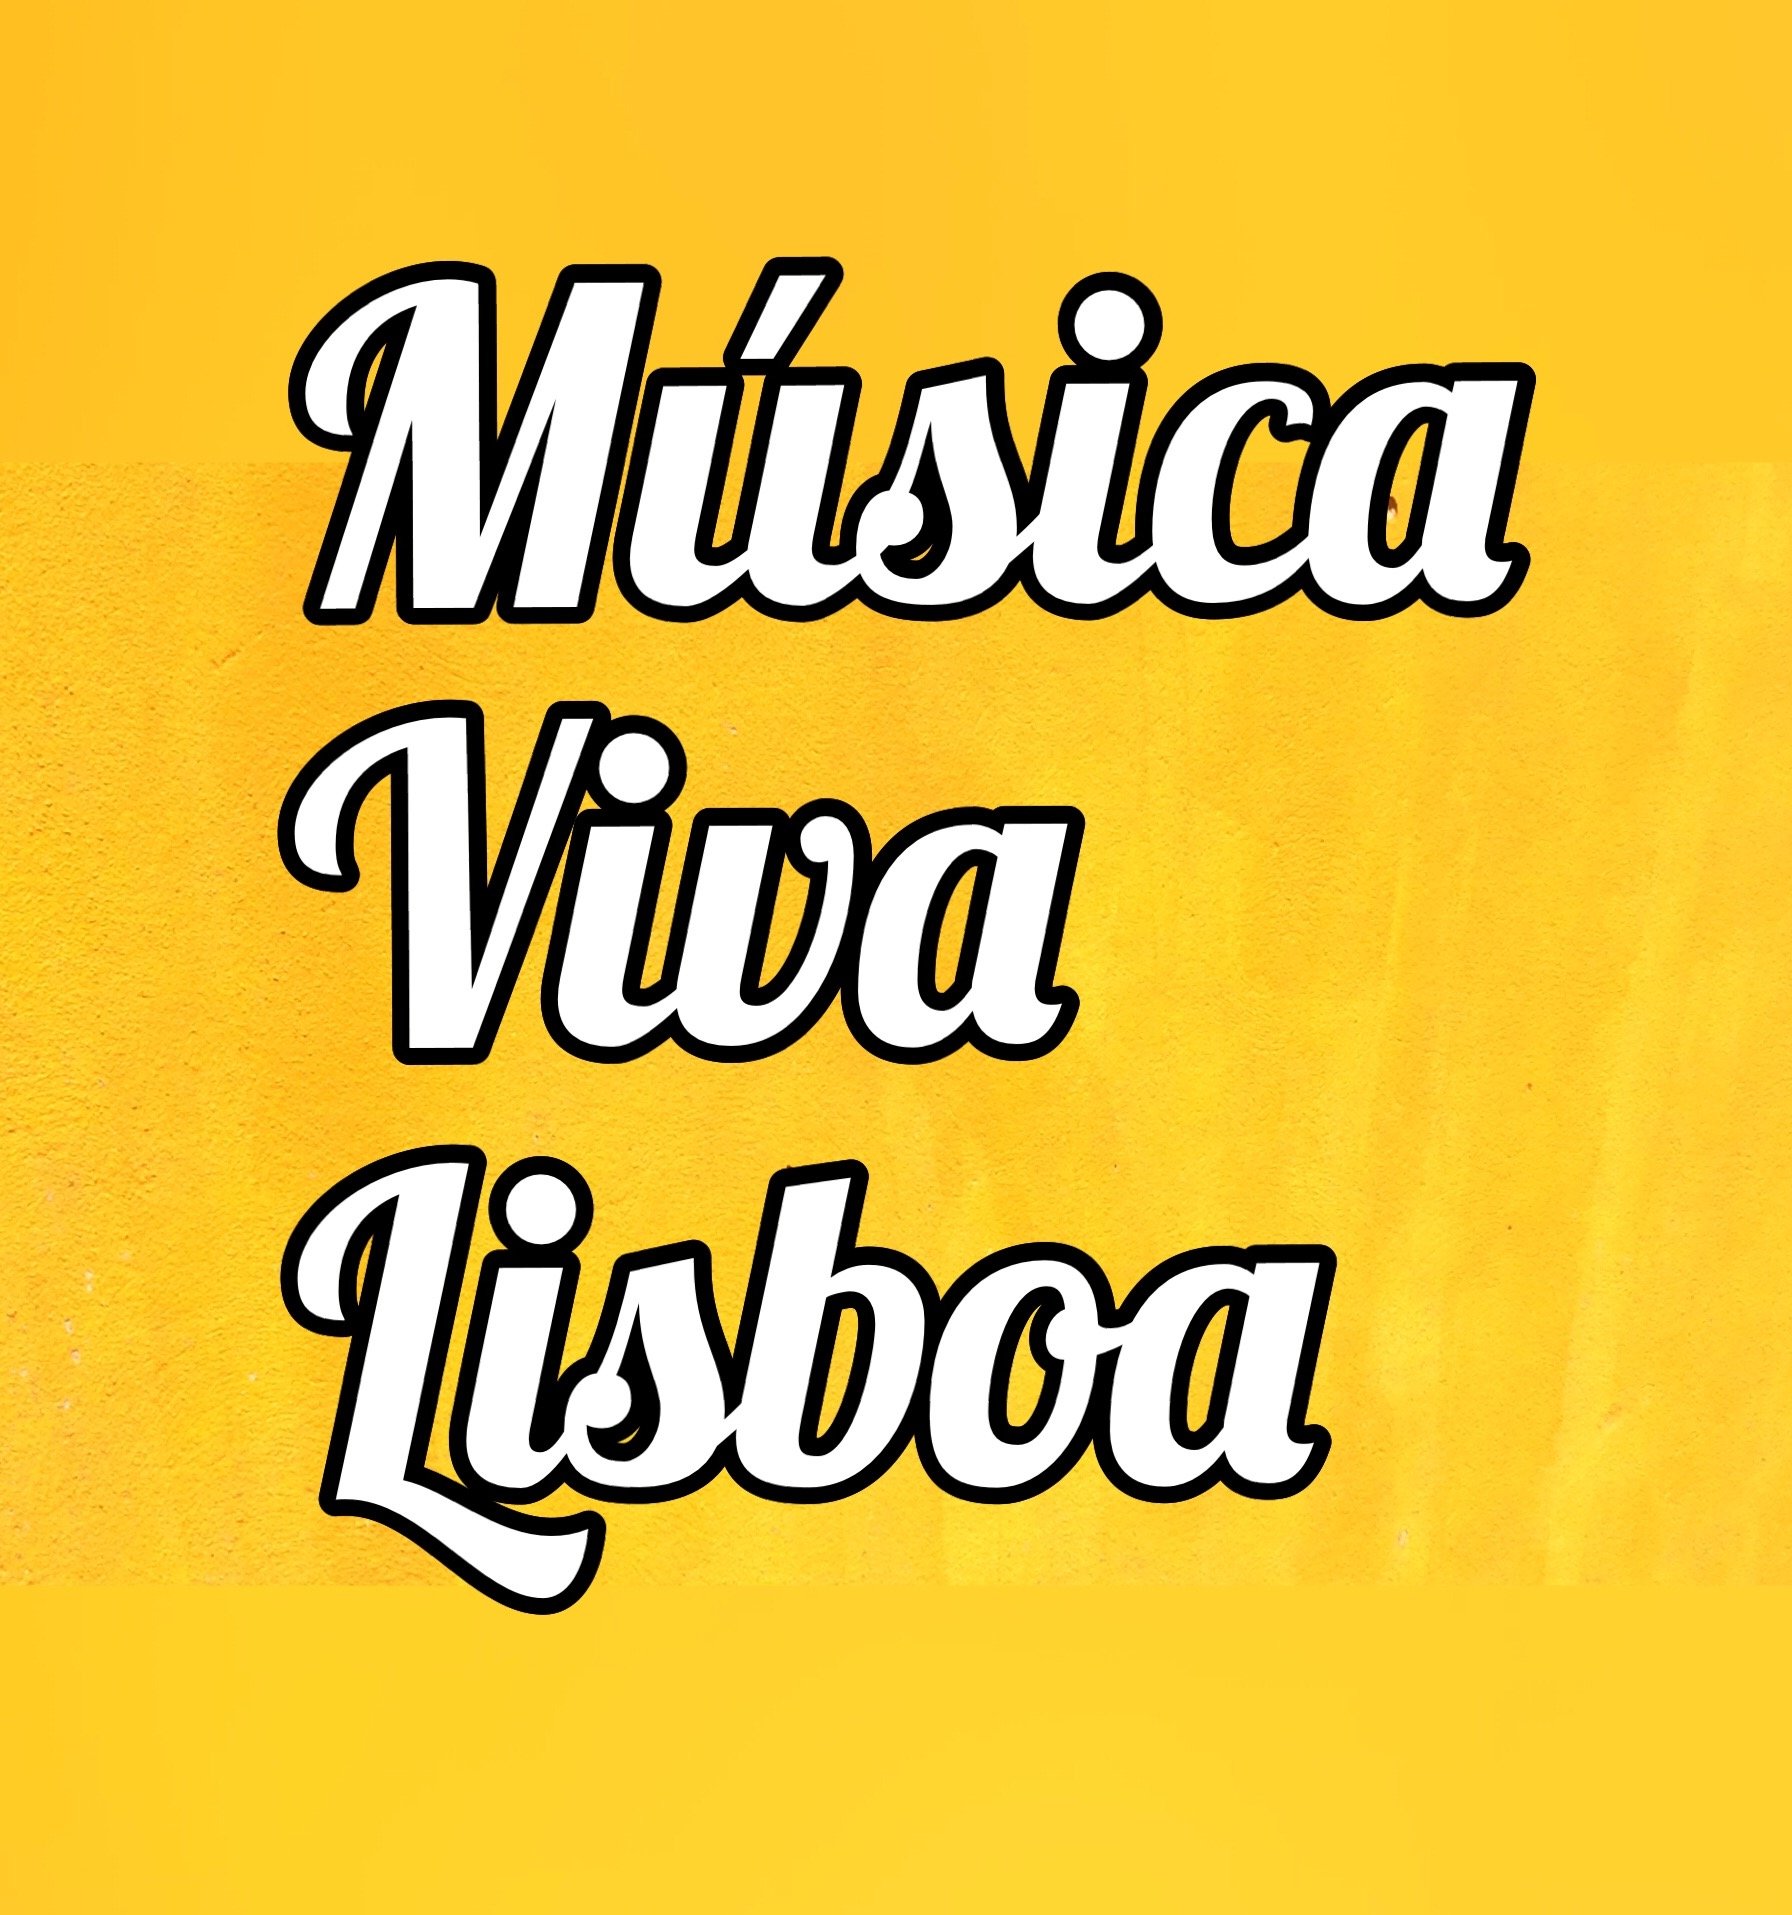 Música Viva Lisboa